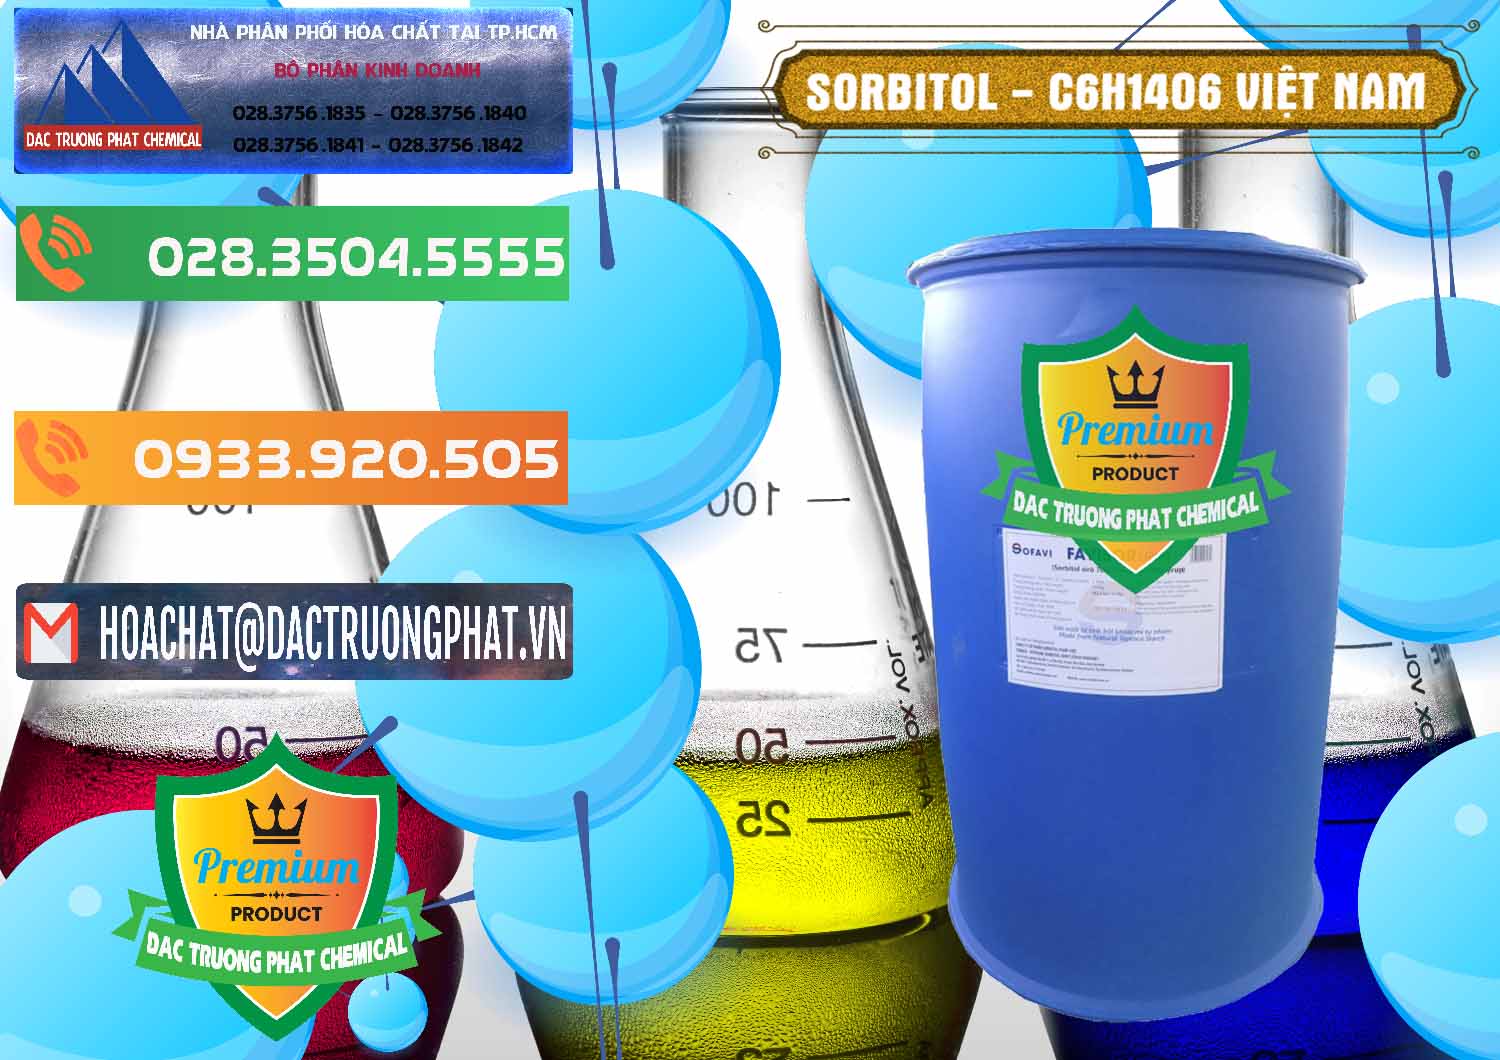 Cty chuyên cung cấp _ bán Sorbitol - C6H14O6 Lỏng 70% Food Grade Việt Nam - 0438 - Chuyên phân phối - cung ứng hóa chất tại TP.HCM - hoachatxulynuoc.com.vn